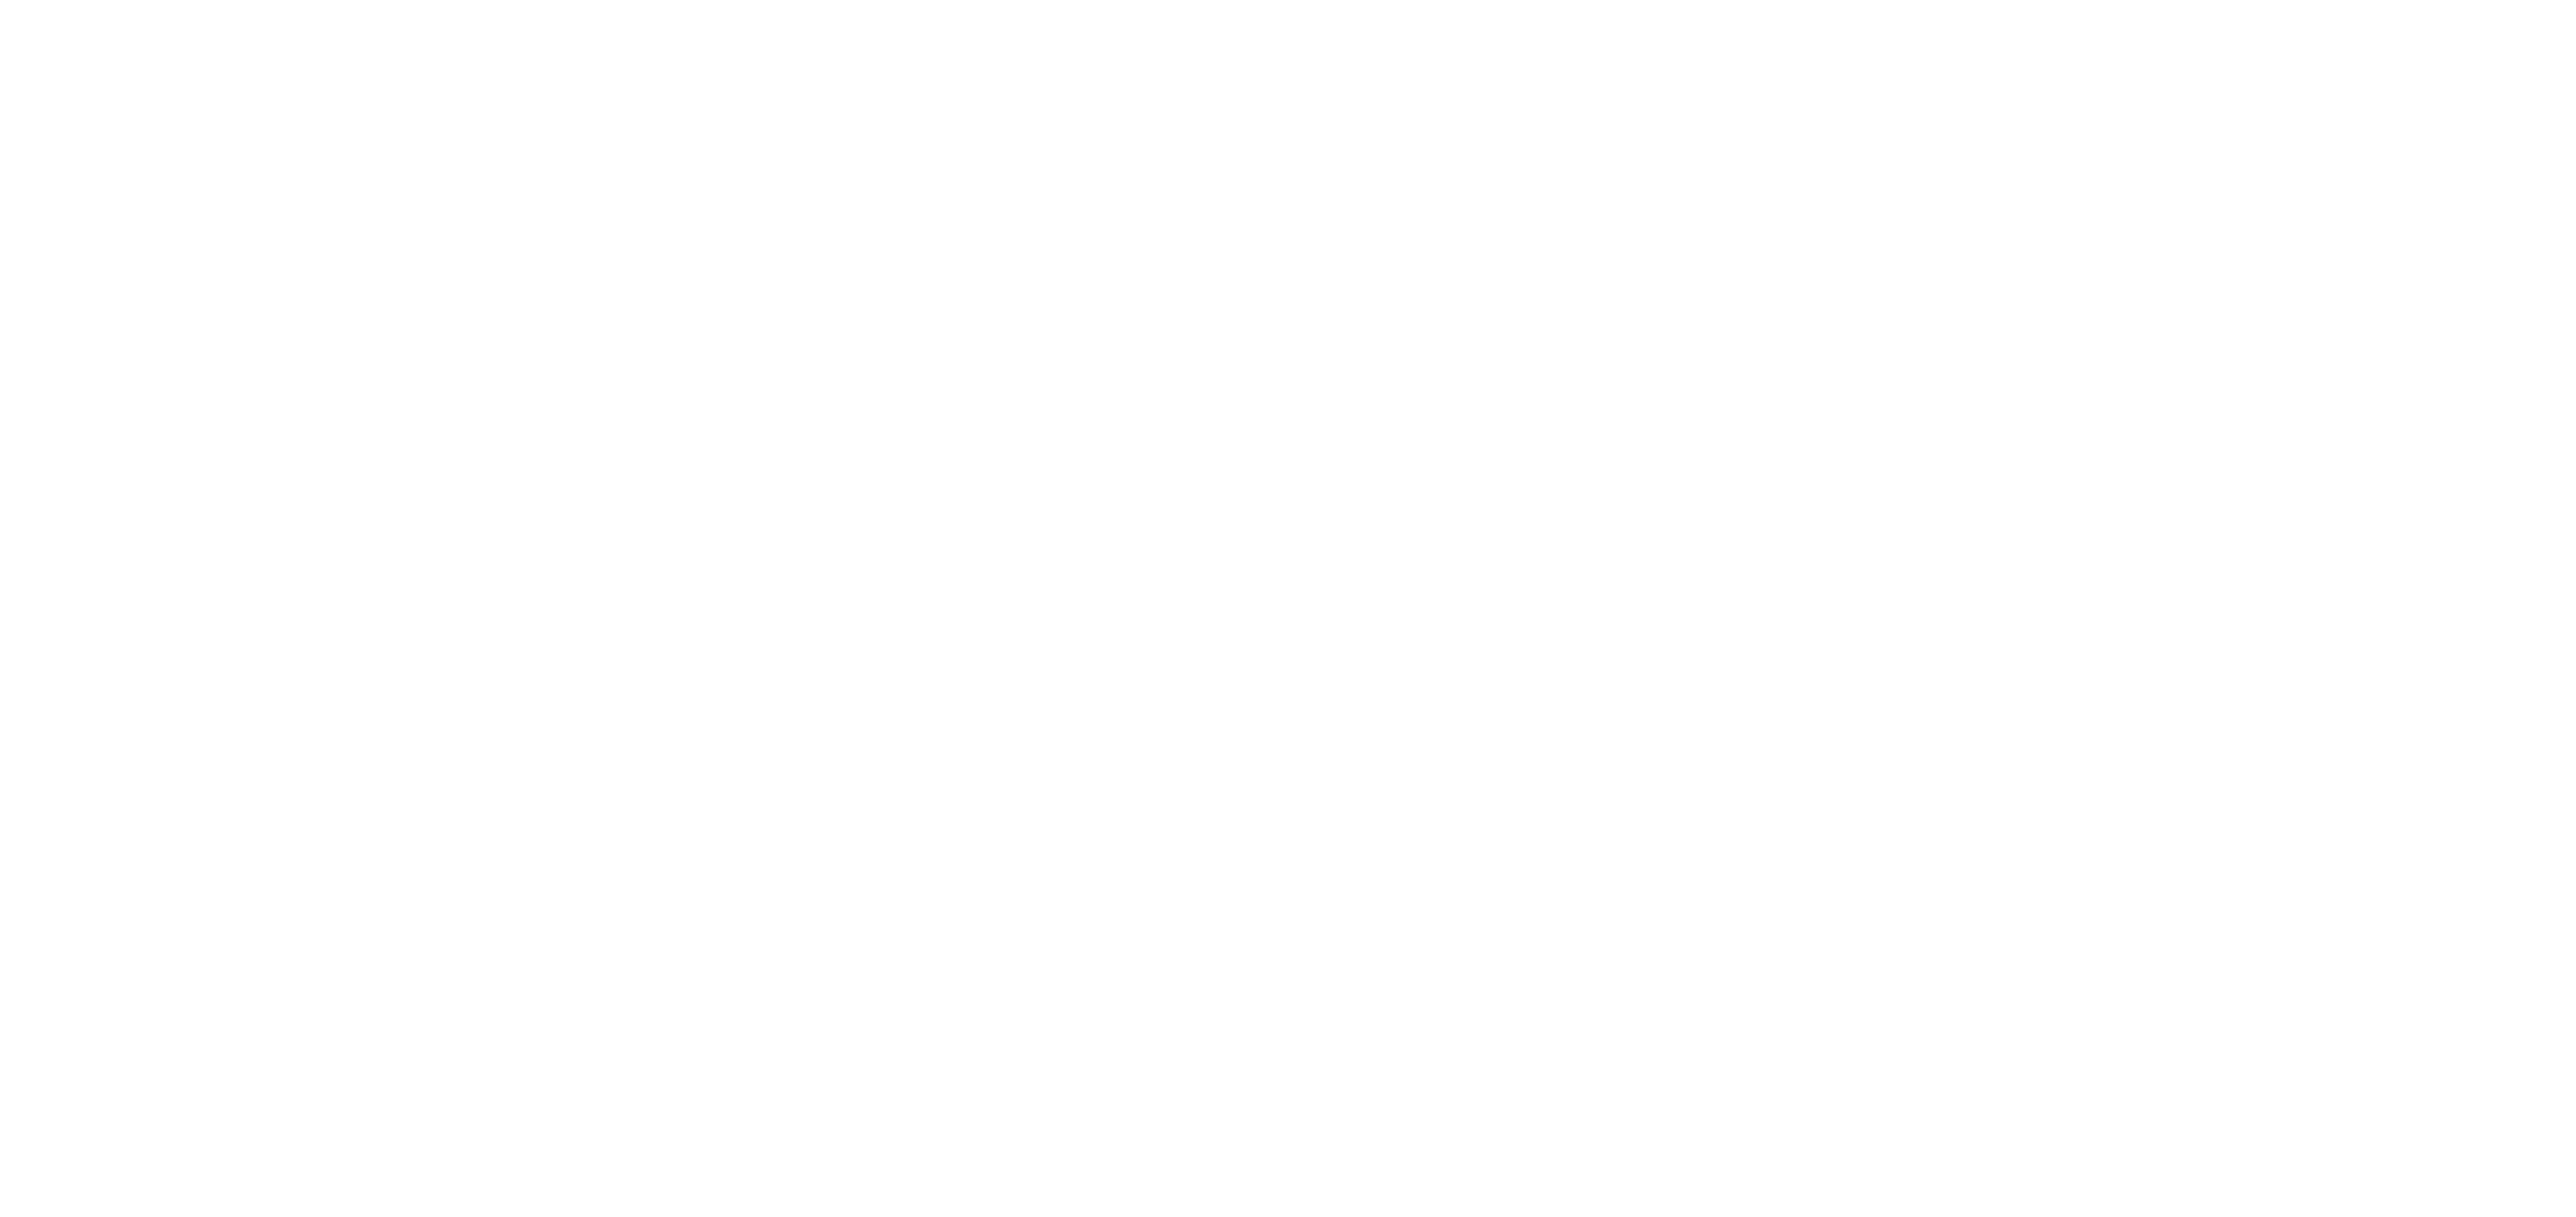 Chihuahua: Scretaría de Trabajo y Prevision Social